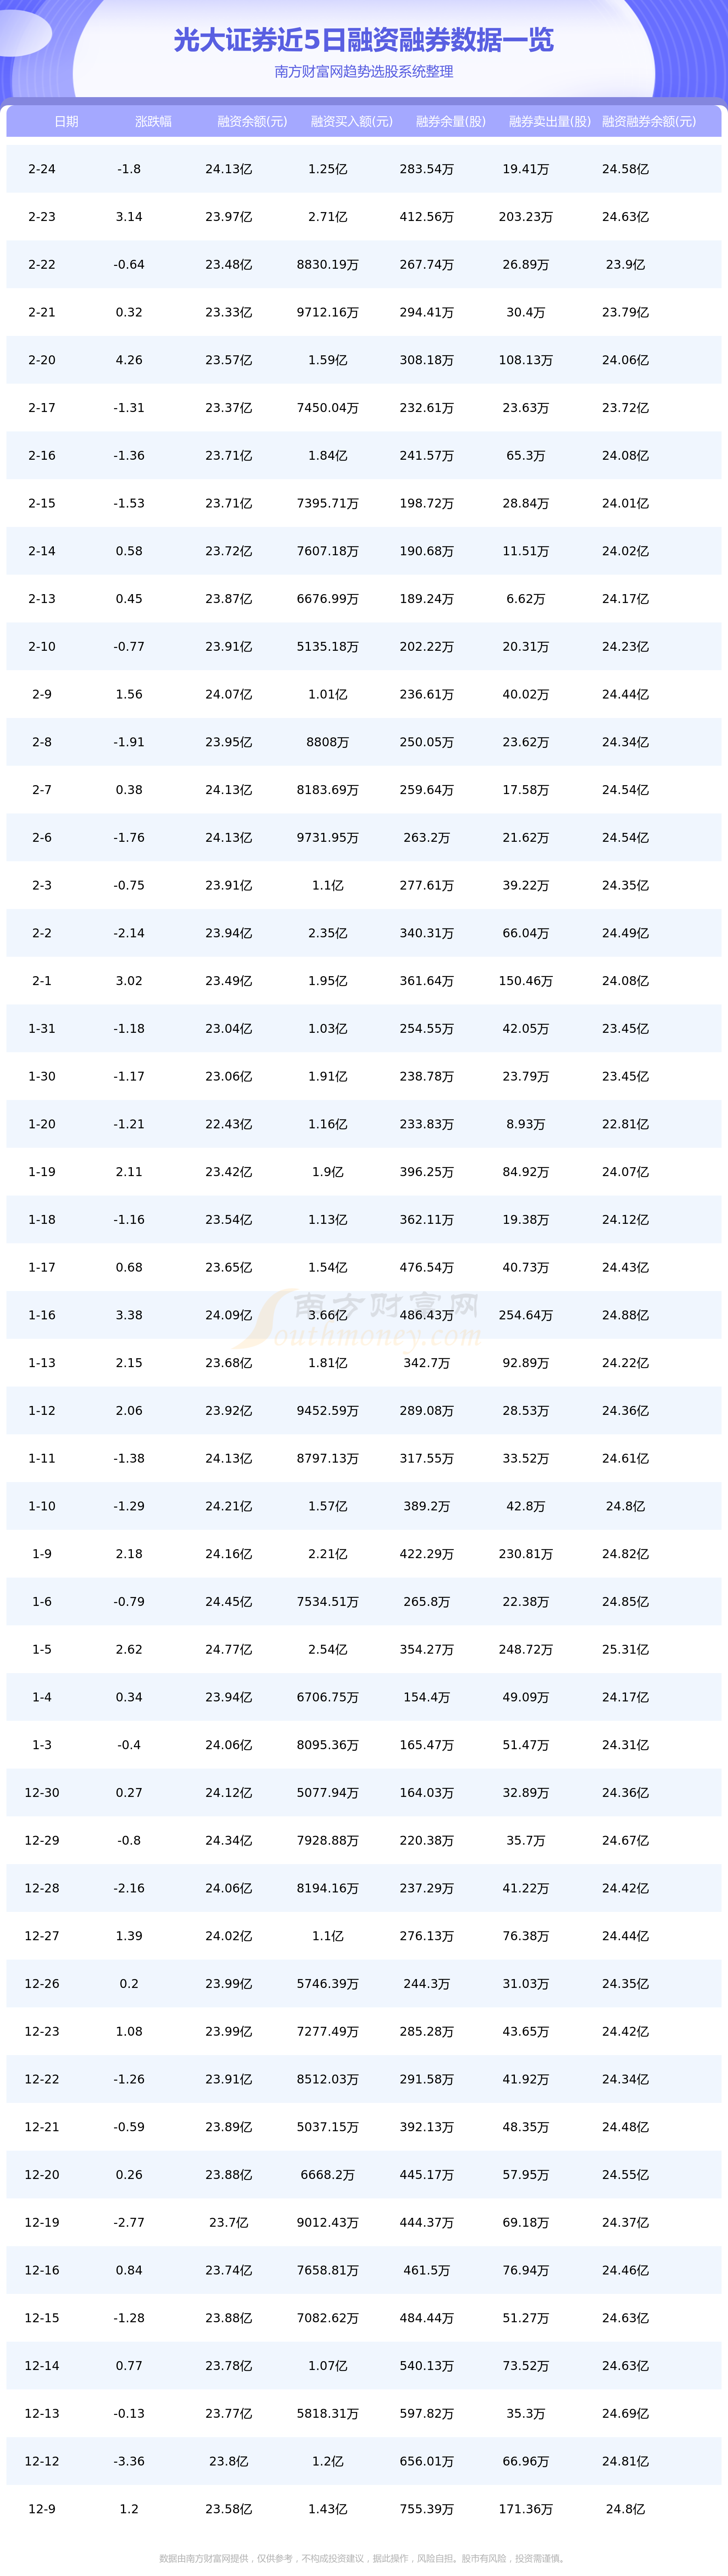 2月24日资金流向统计：光大证券资金流向一览表